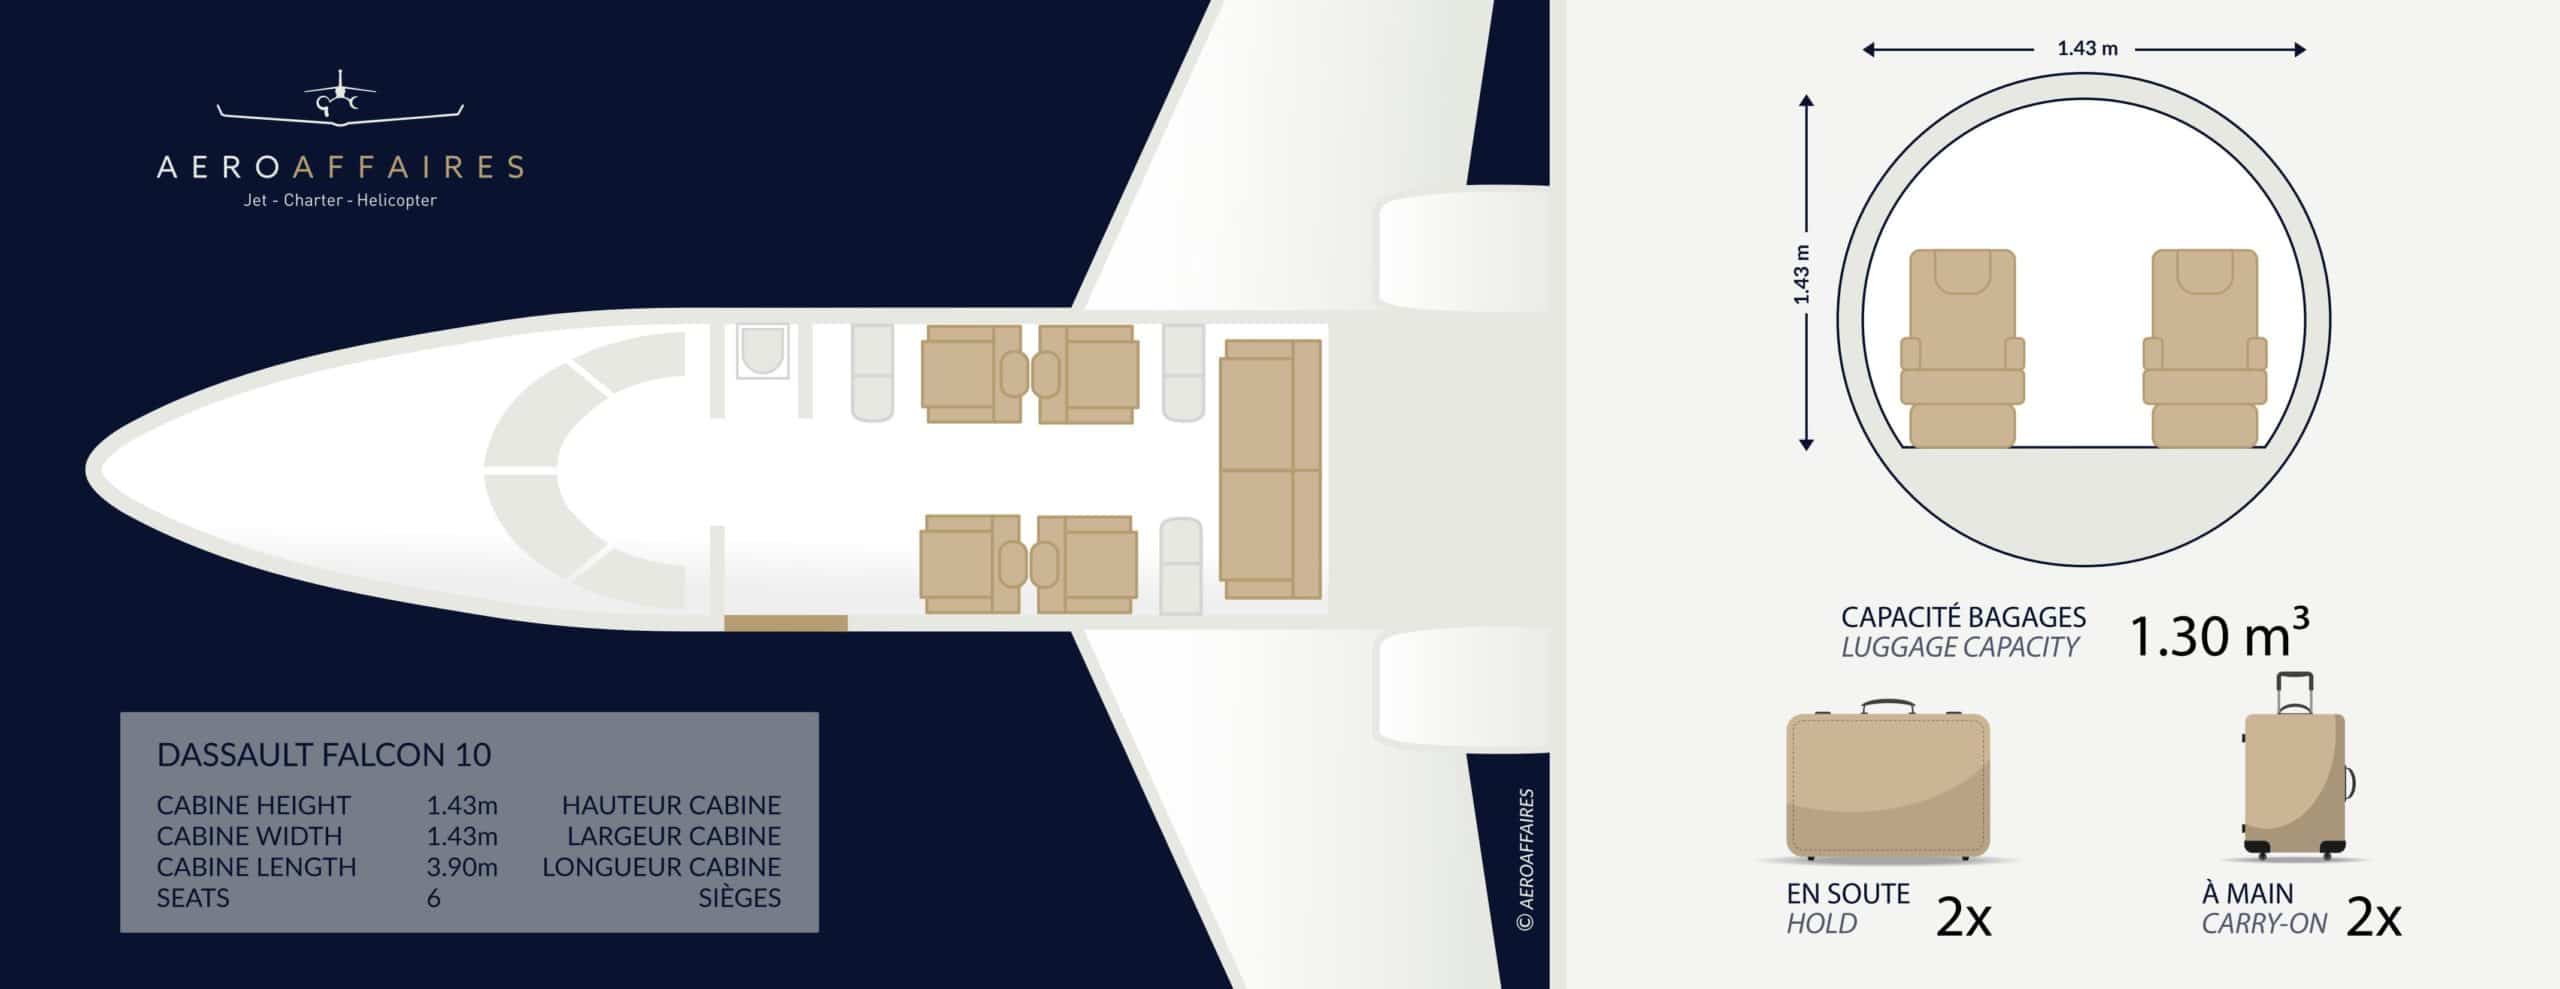 plan intérieur Falcon 10 jet privé